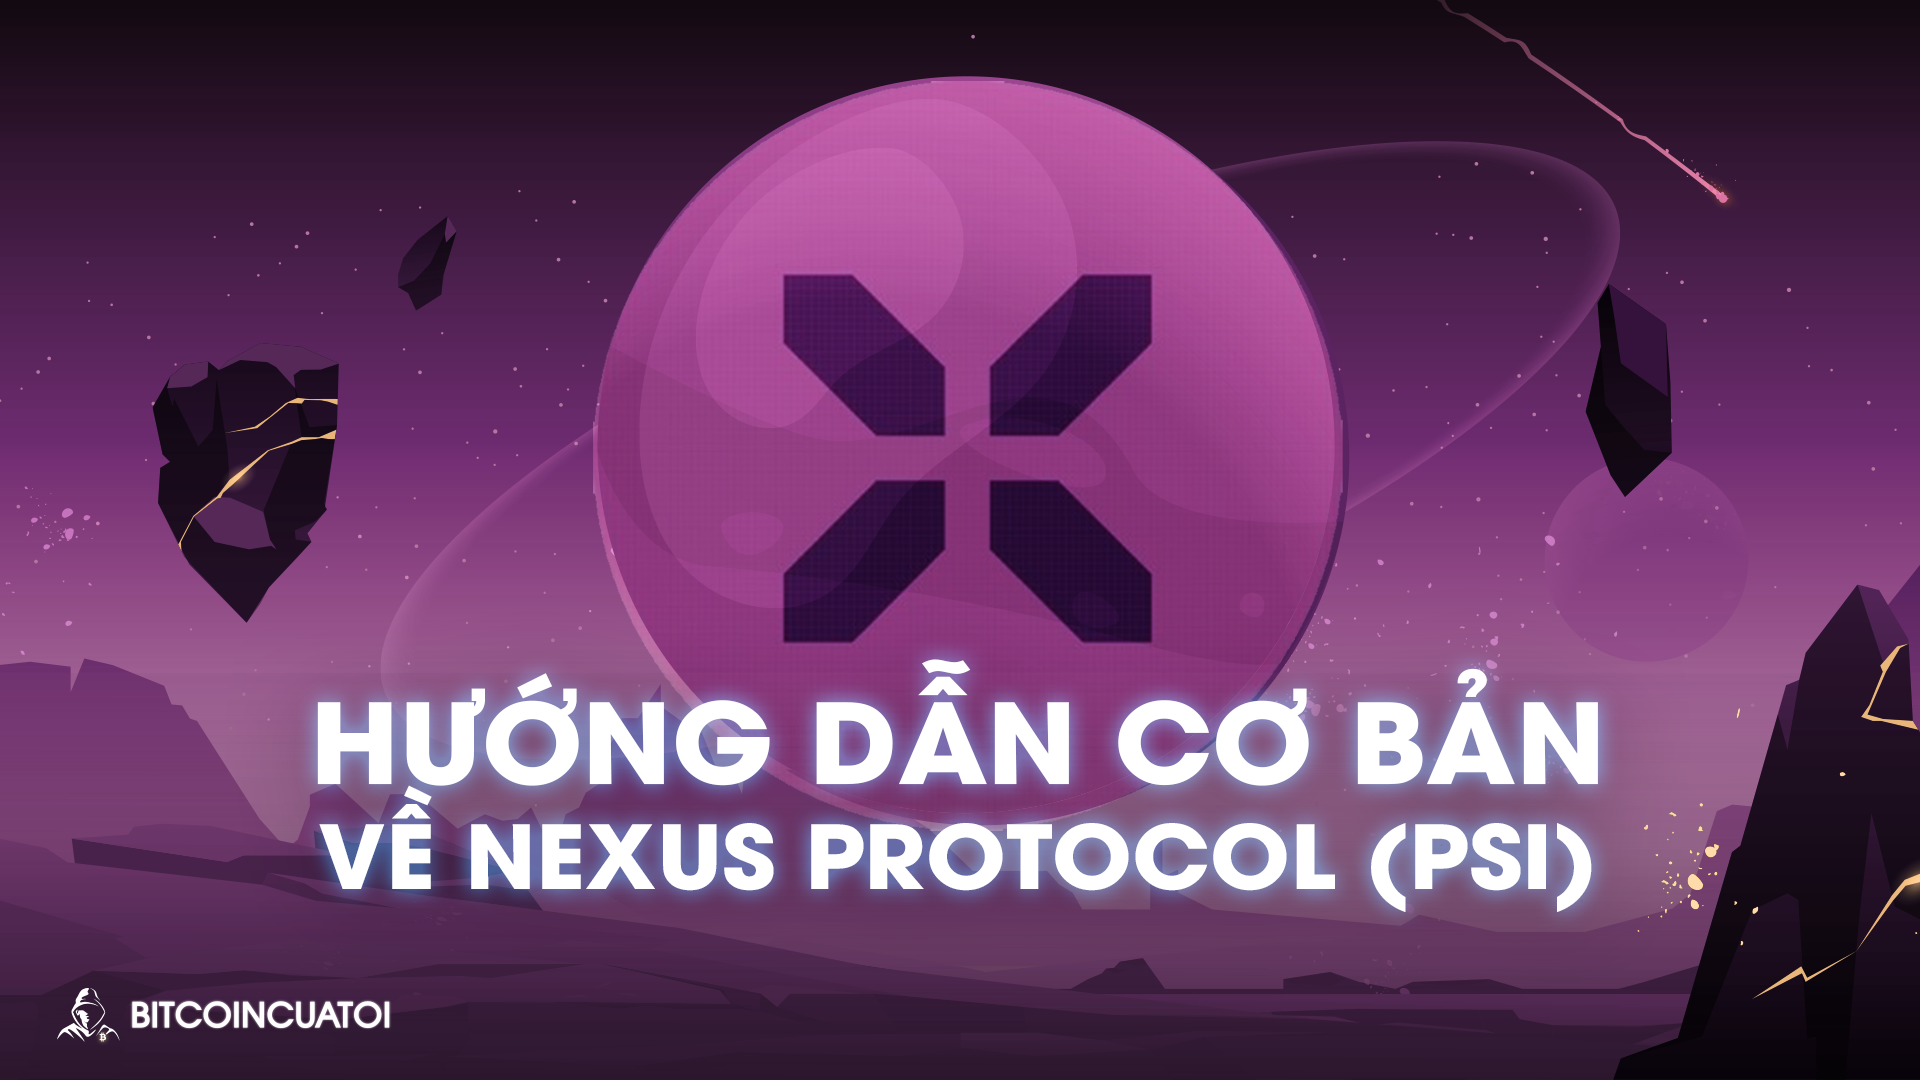 Hướng dẫn cơ bản về Nexus Protocol (PSI)